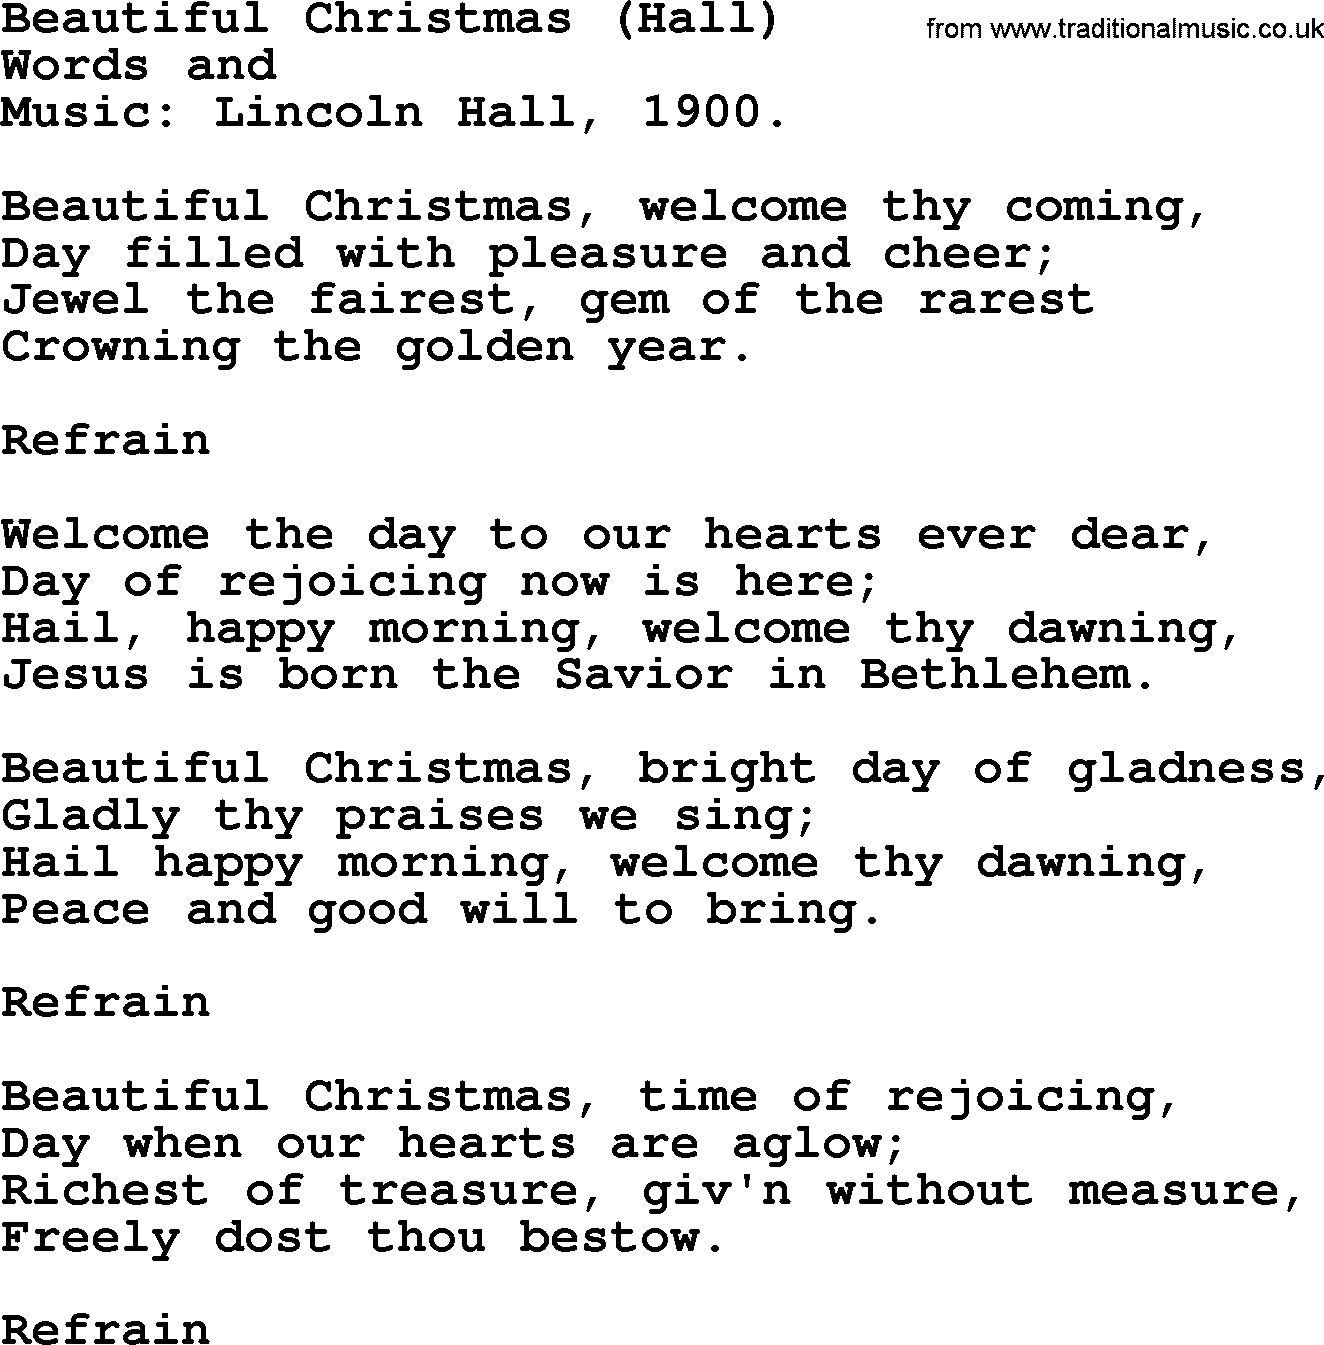 Christmas Hymns, Carols and Songs, title: Beautiful Christmas (hall), lyrics with PDF